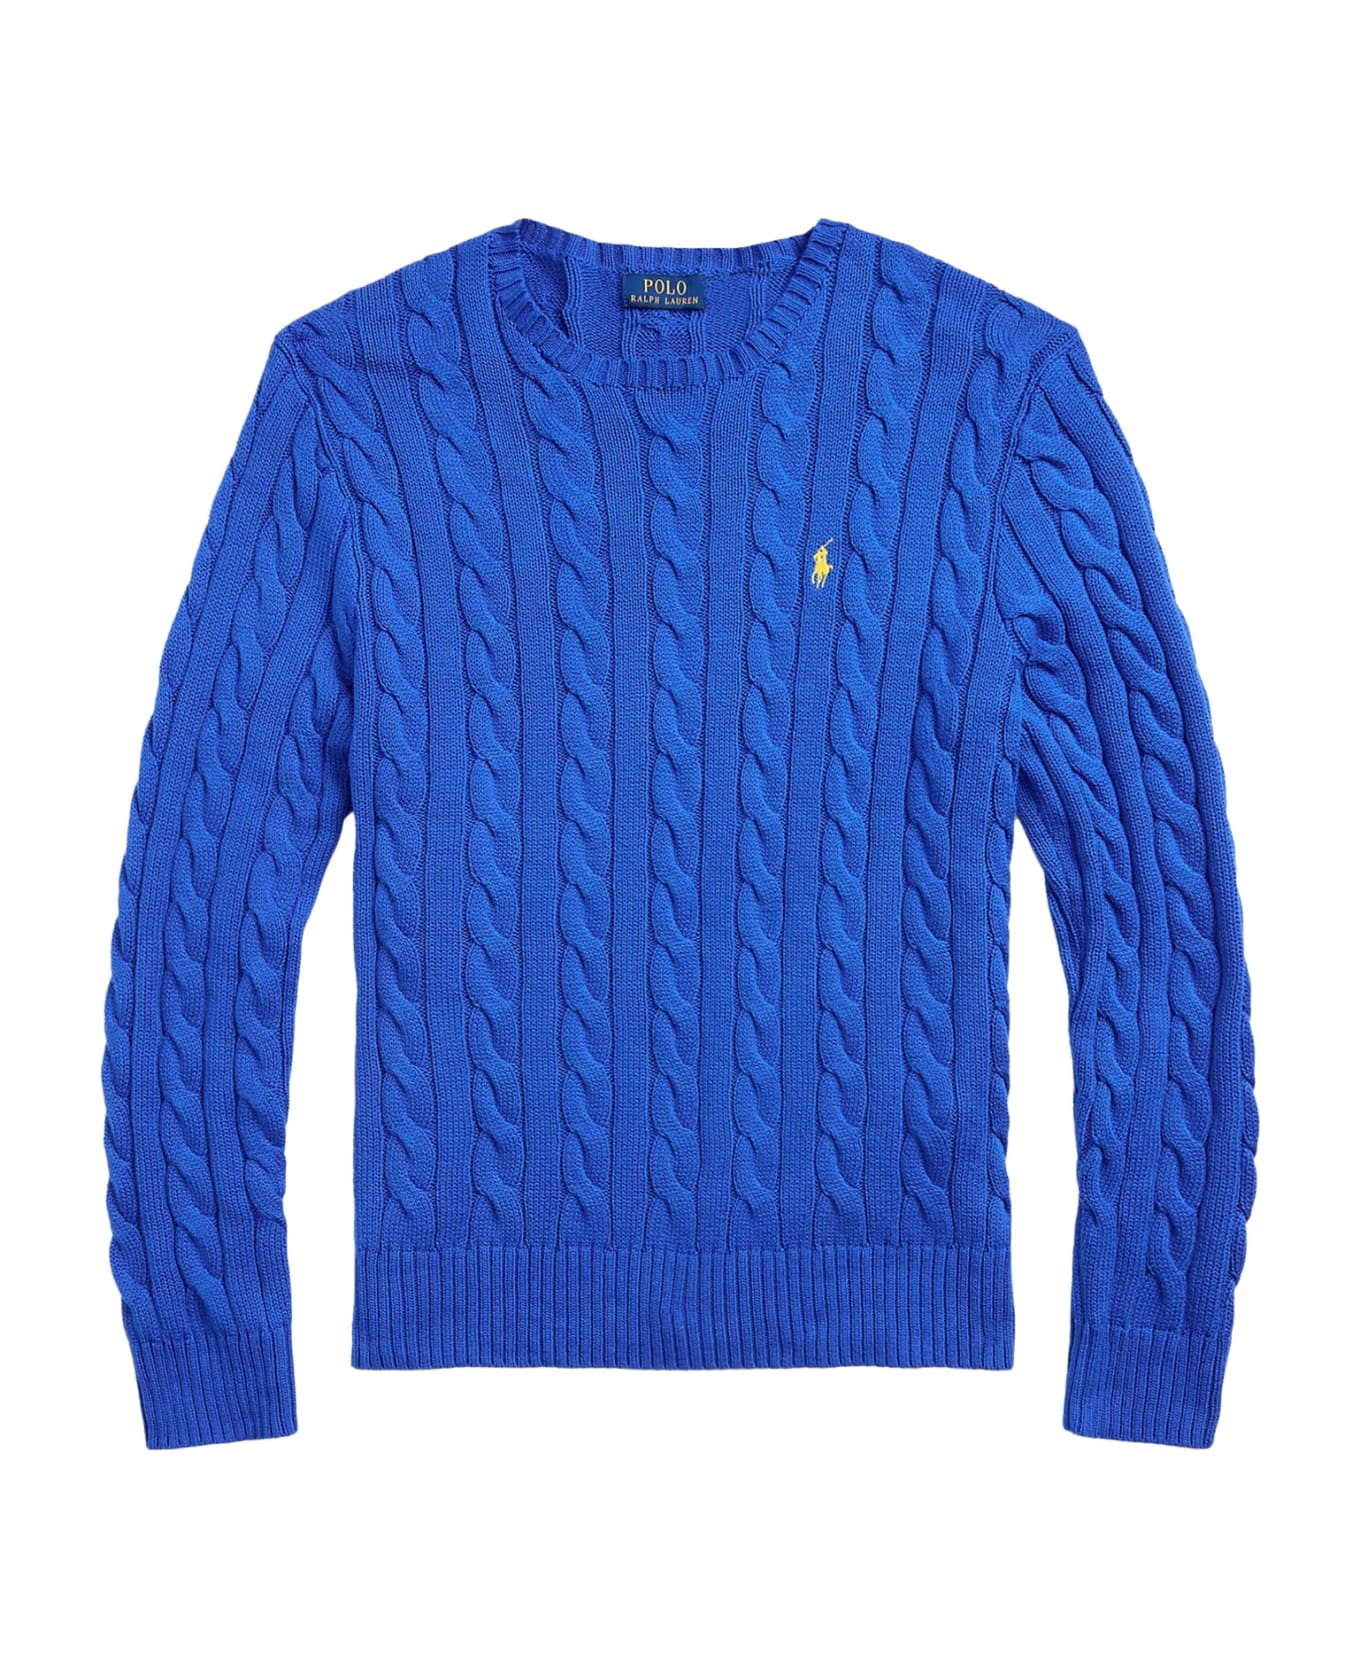 Polo Ralph Lauren Sweater - HERITAGE BLUE ニットウェア